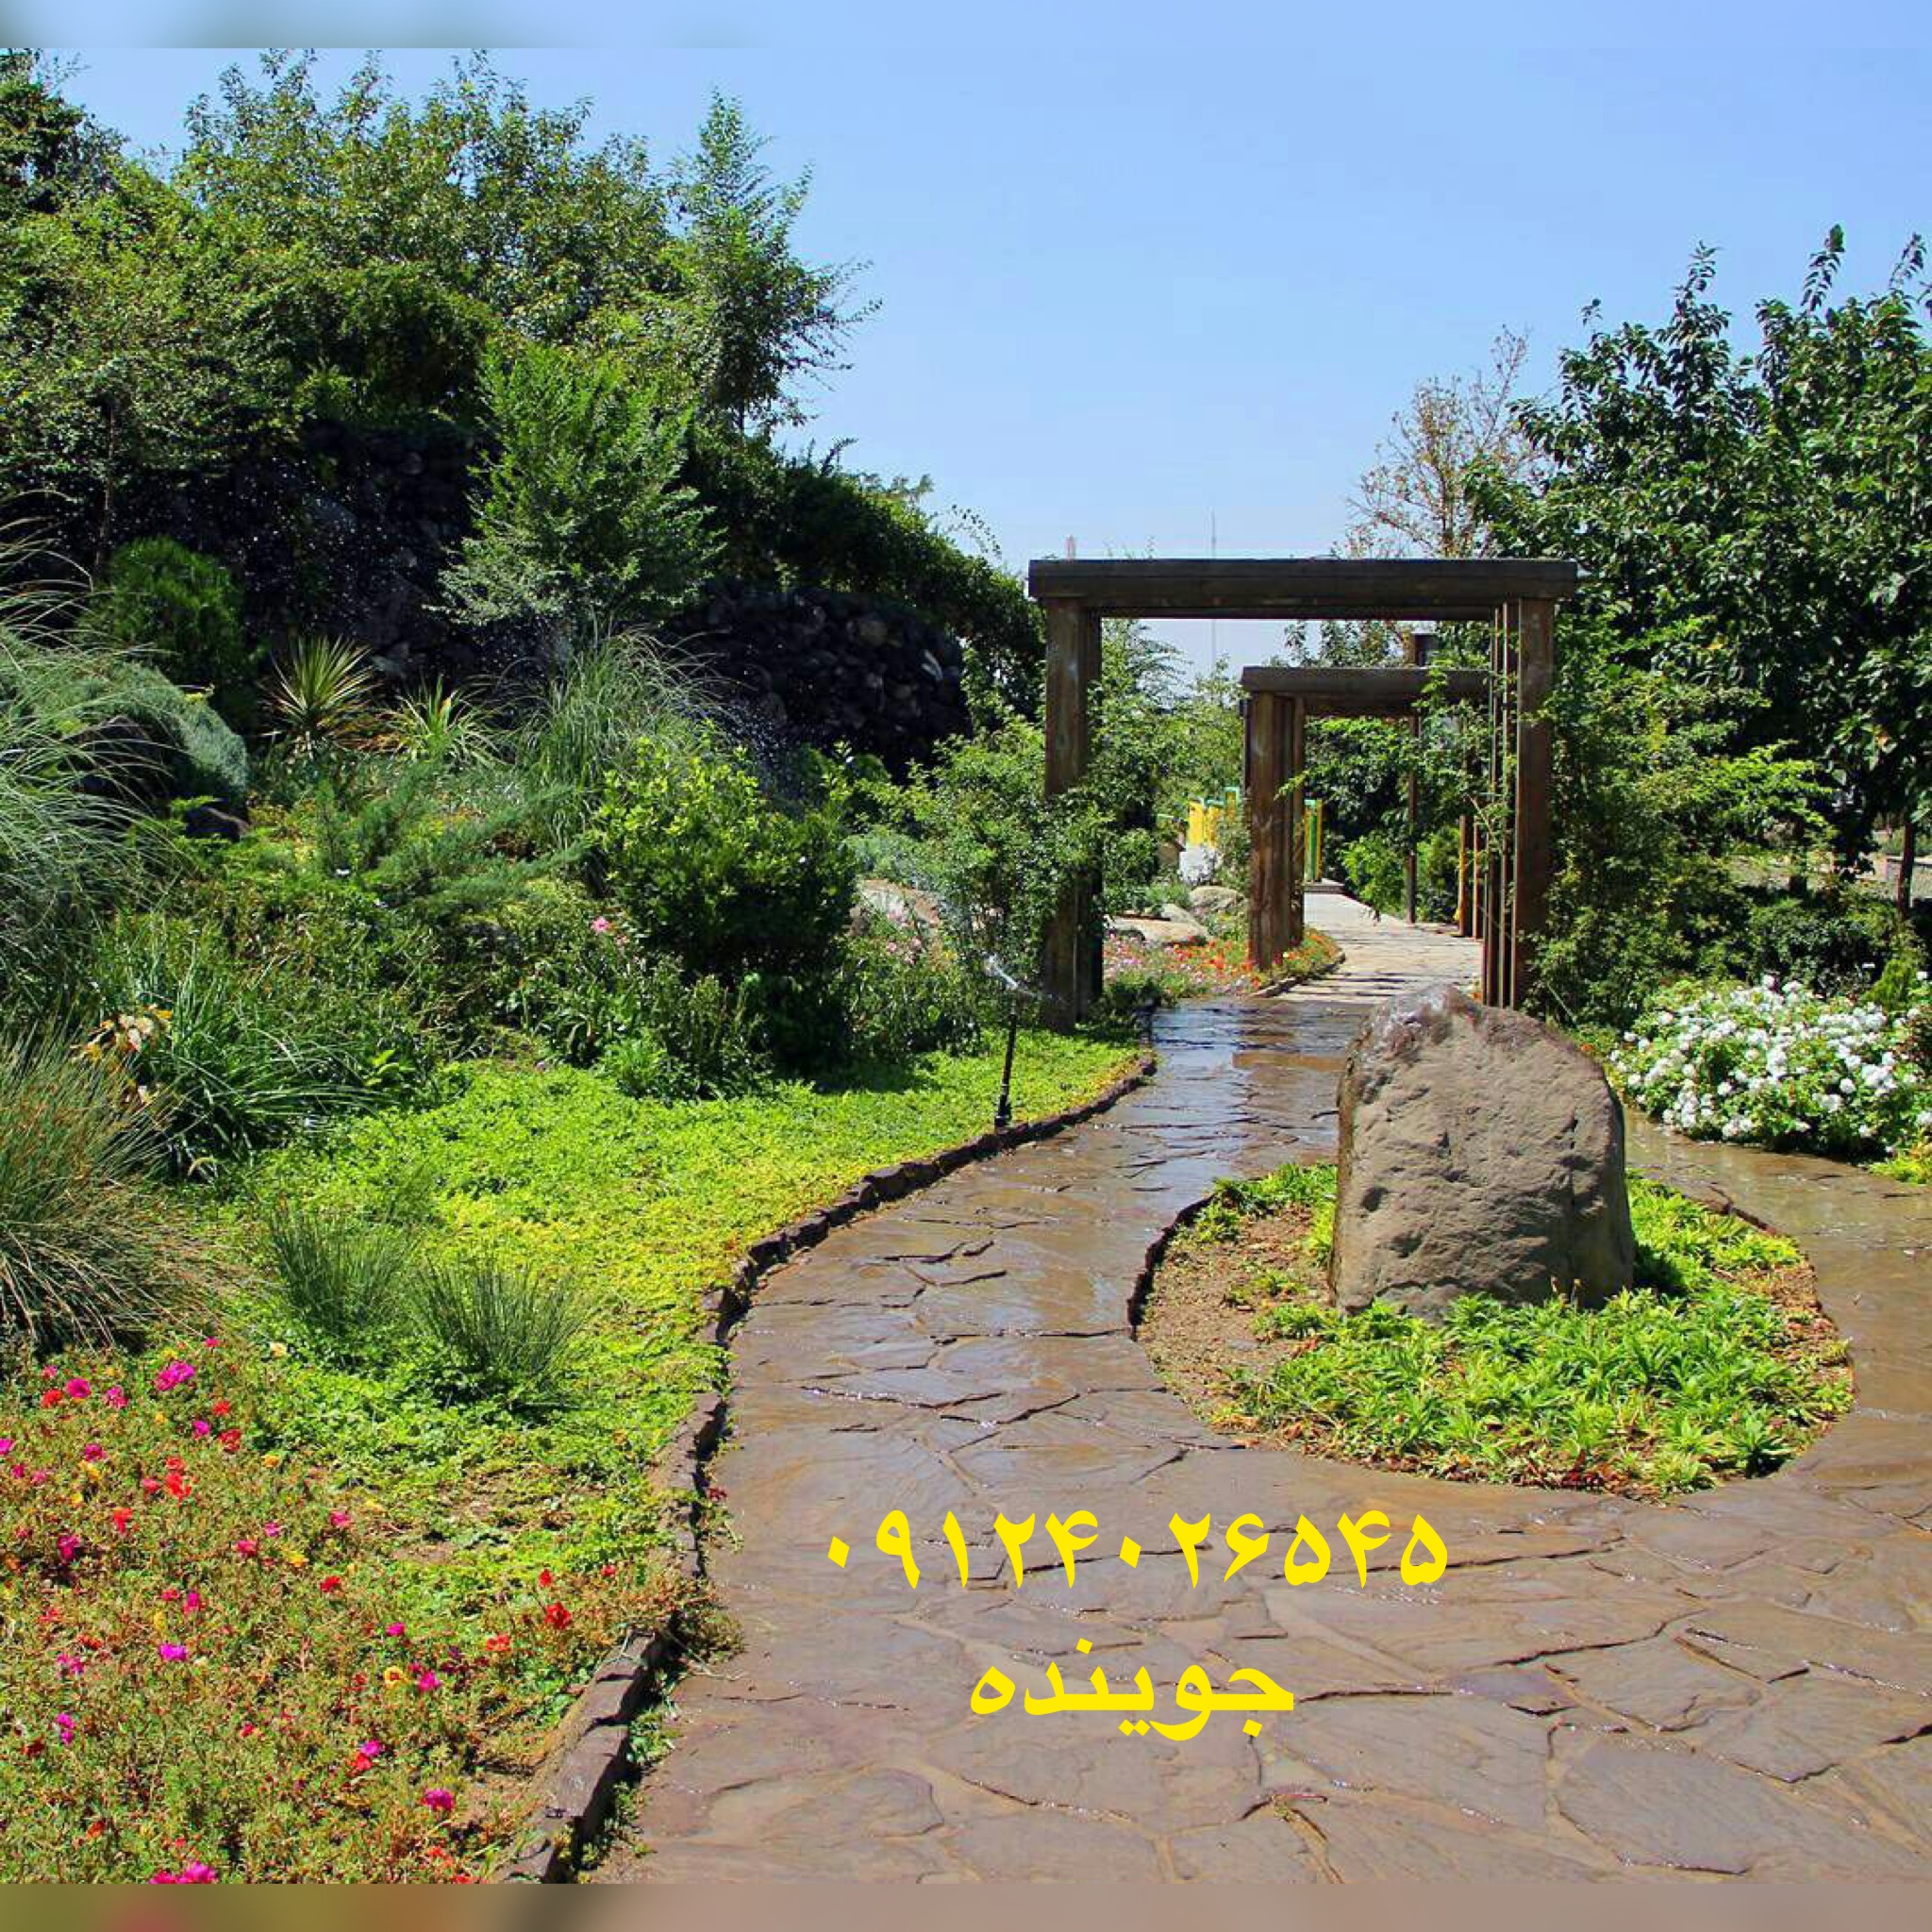 نصب سنگ لاشه برای تمام مسیر های باغ بزرگ جمشیدی نصب سنگ لاشه برای مسیر ها و دیوارهای باغچه پله درپوش کف پوش با سنگ لاشه اجرا شده است 